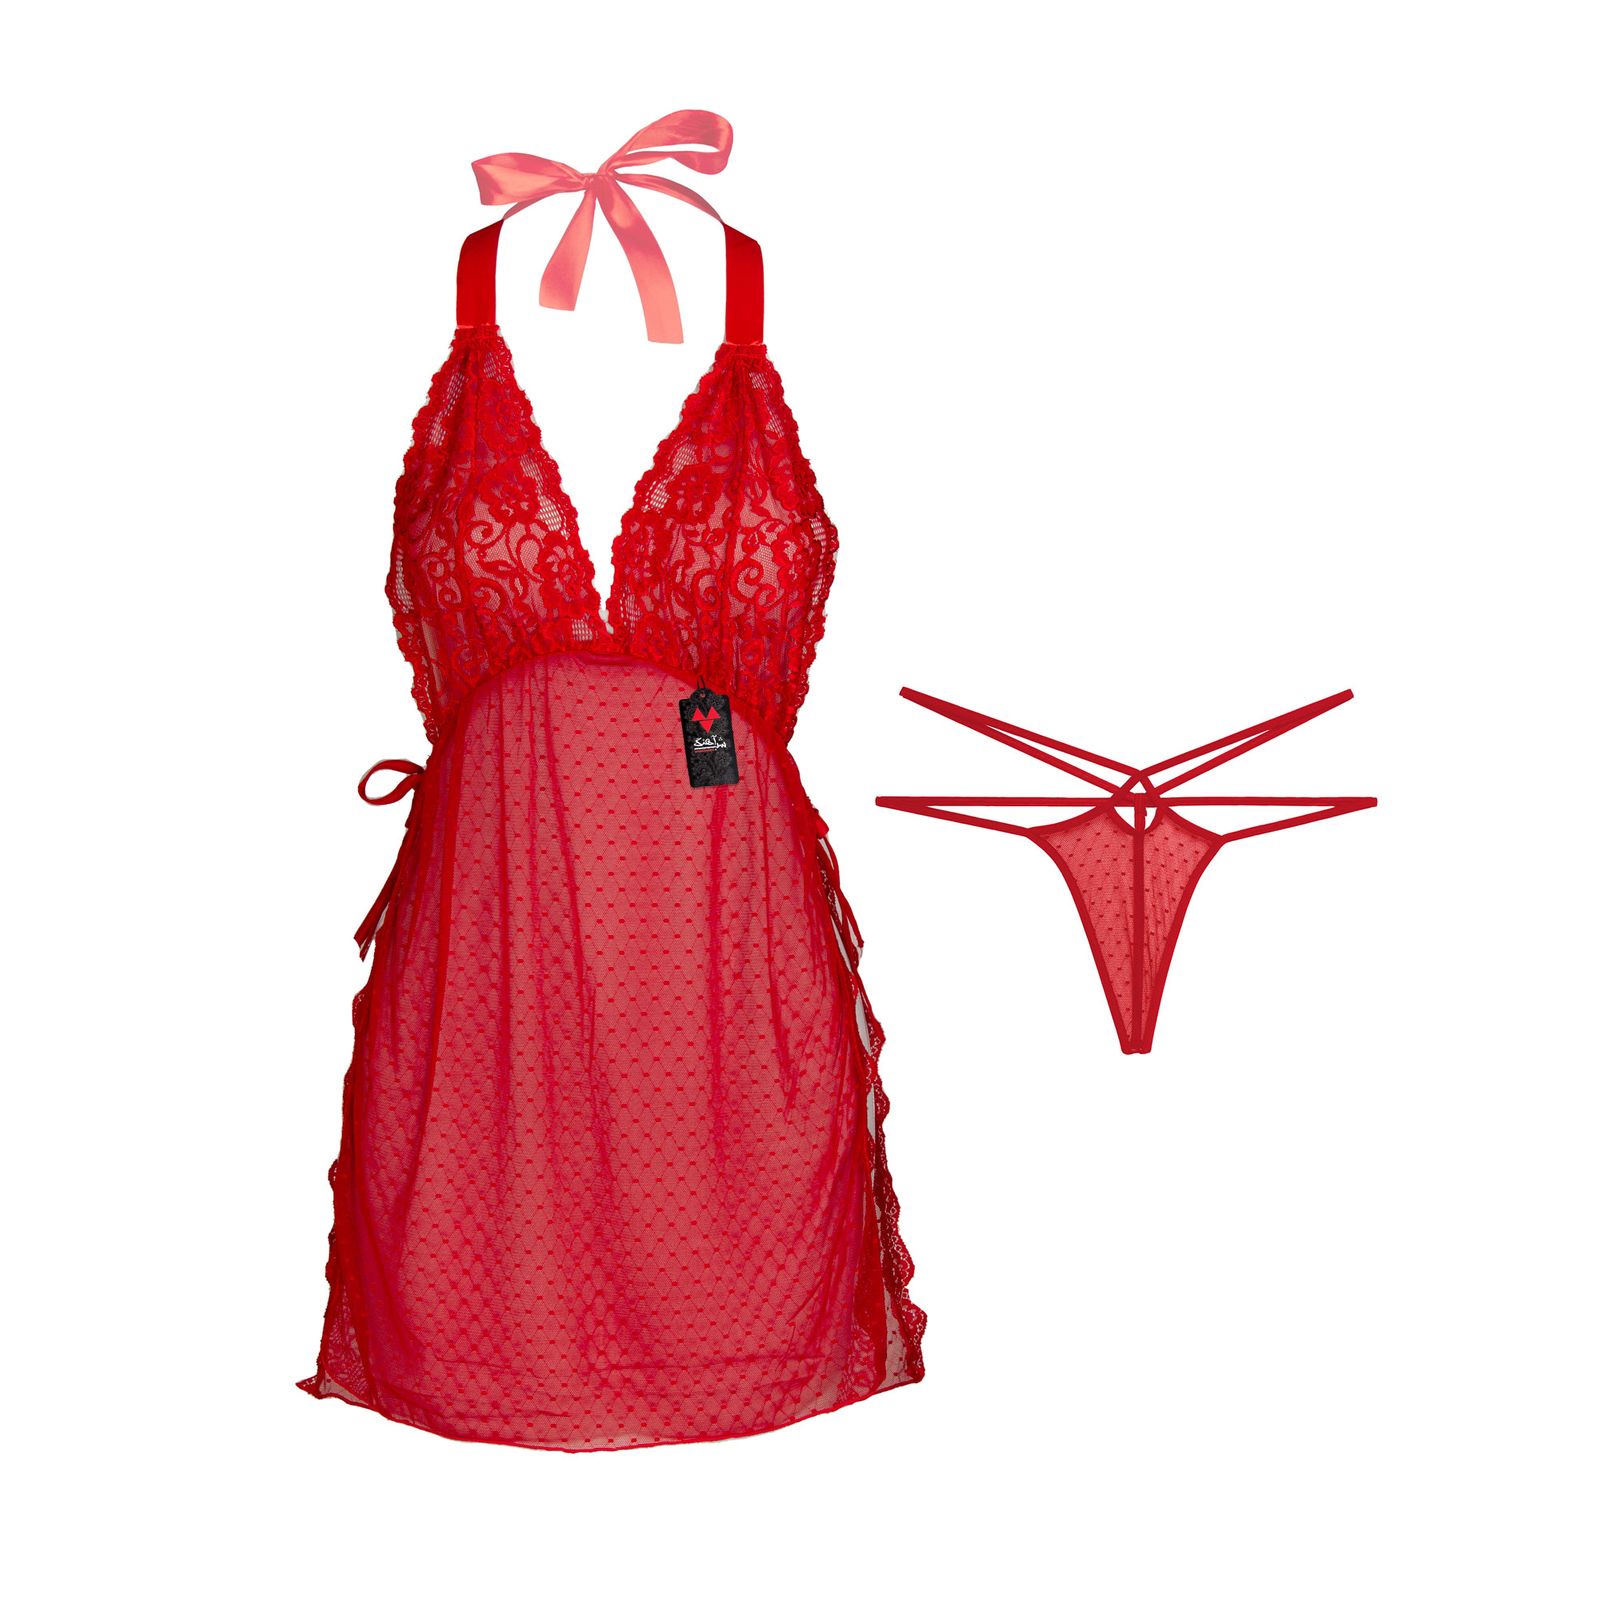 لباس خواب زنانه شباهنگ مدل Waiter رنگ قرمز -  - 1